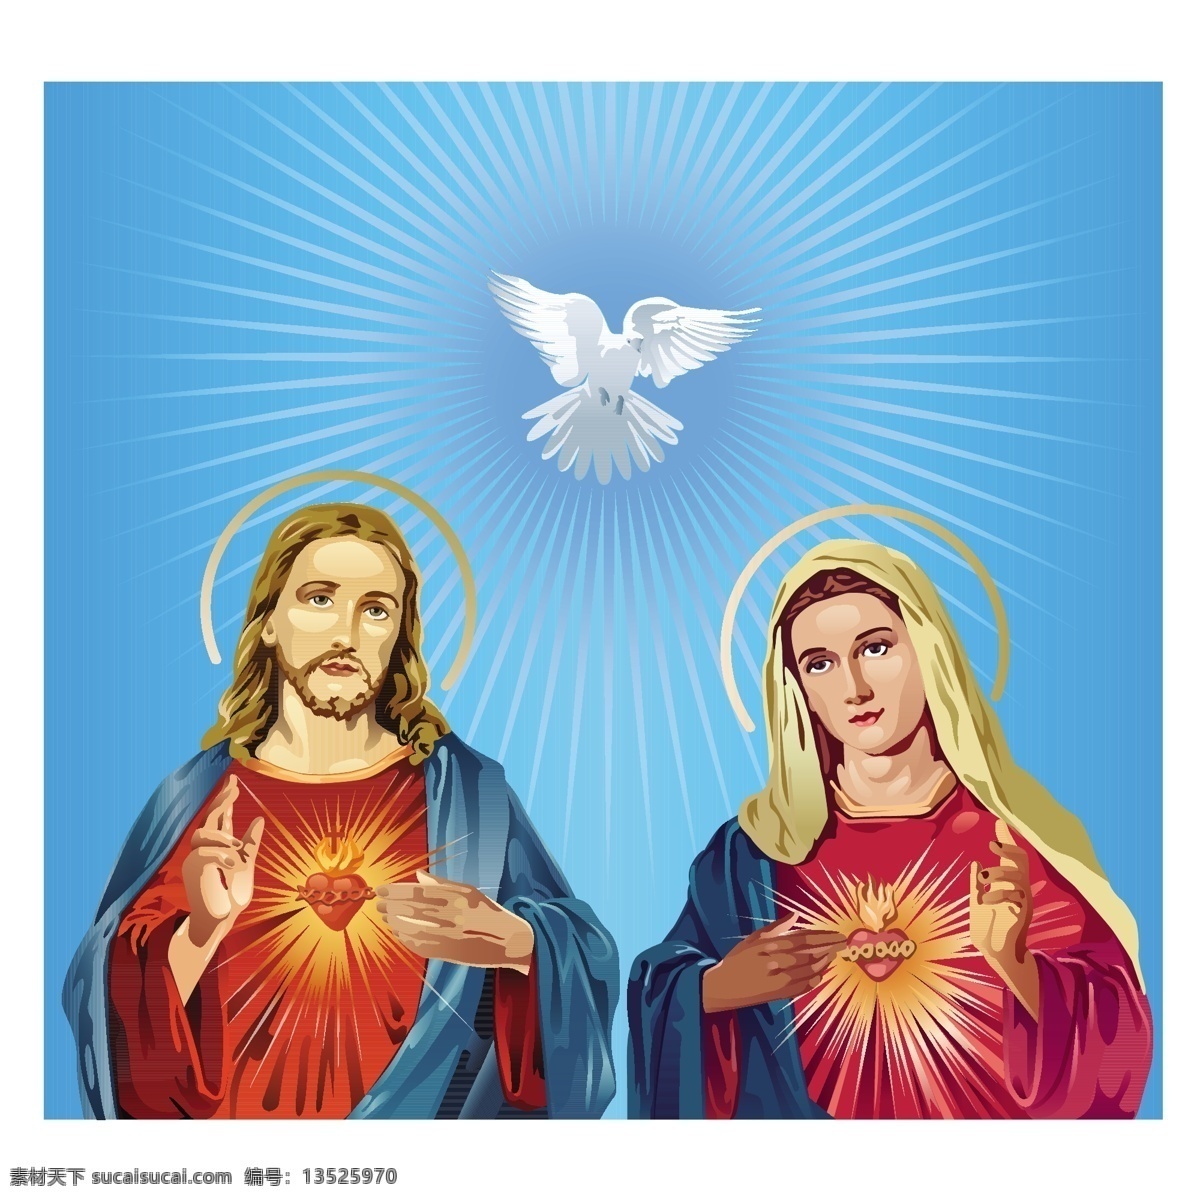 卡通 圣母 耶稣 基督教漫画 宗教漫画 卡通圣母 鸽子 白鸽 卡通插画 logo设计 标志图标 矢量素材